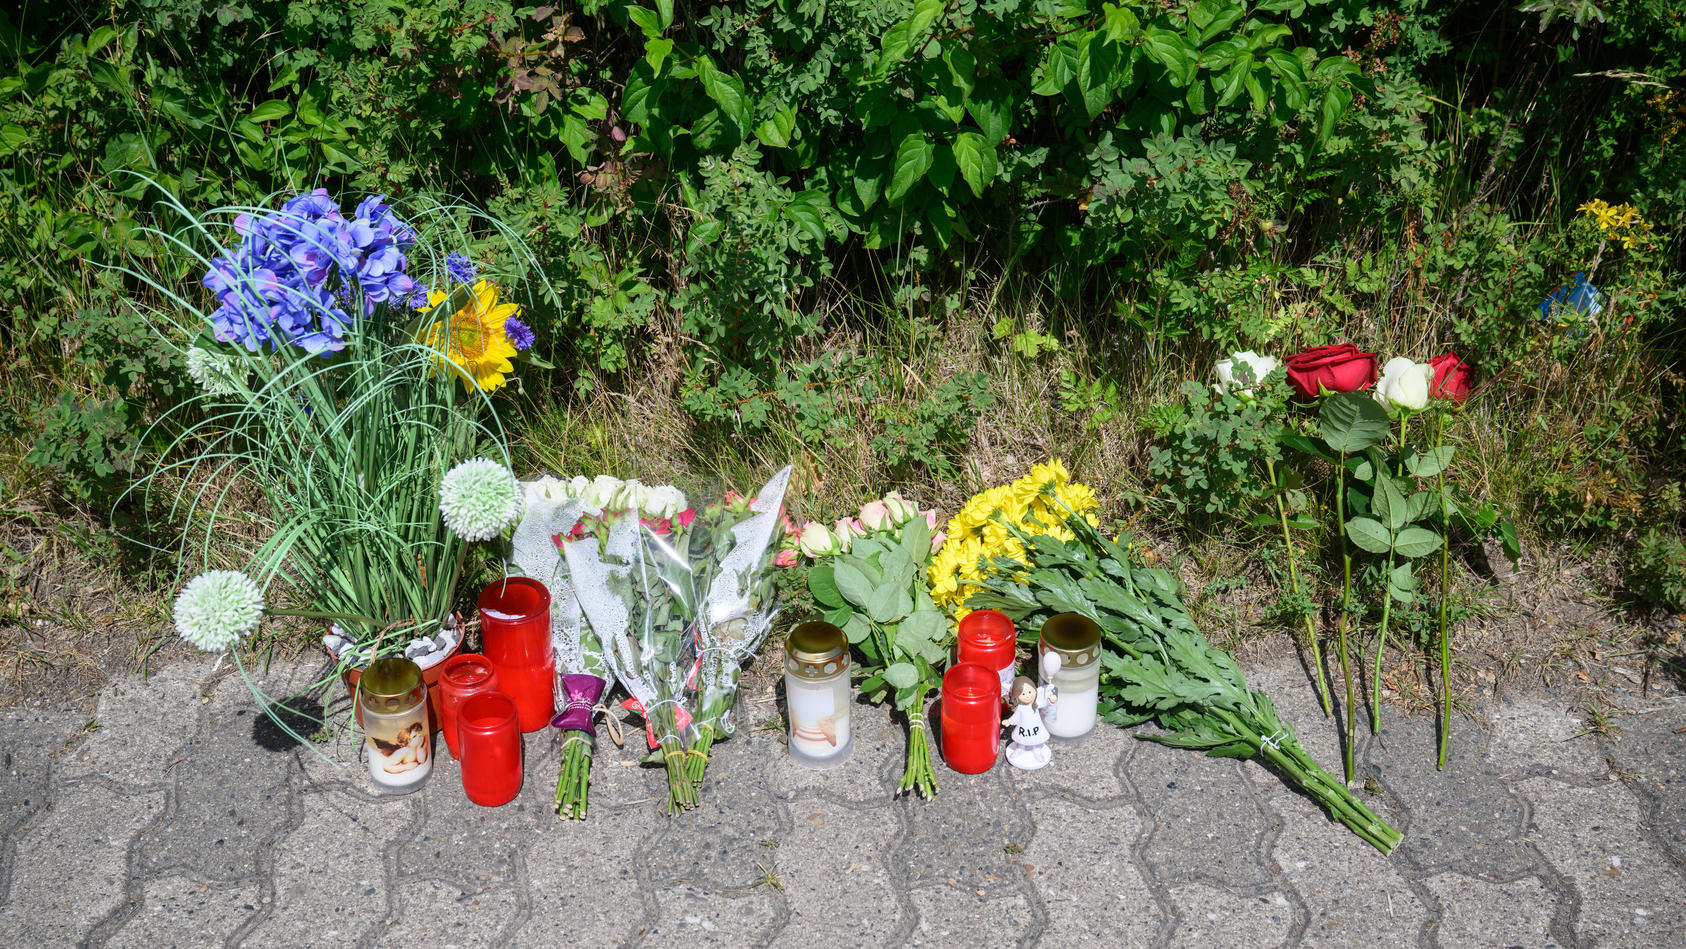 22.06.2022, Niedersachsen, Salzgitter: Kerzen, Blumen und Figuren zum Gedenken an eine getötete 15-jährige liegen an einem Tatort an einer Grünfläche am Hans-Böckler-Ring. Nach dem Fund einer toten 15-Jährigen in Salzgitter gelten zwei Jugendliche al